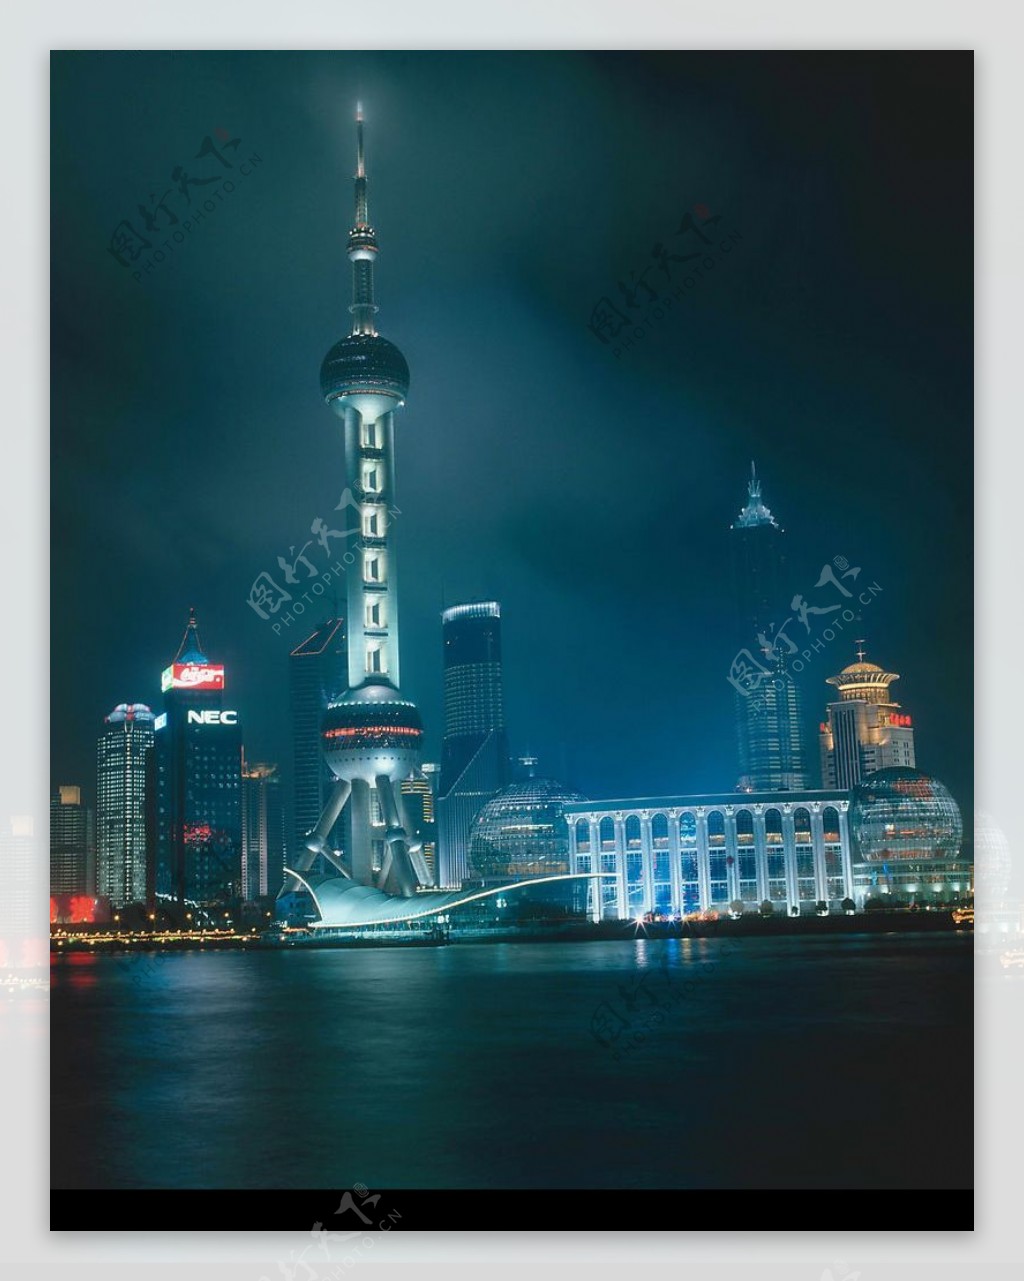 上海明珠电视塔夜景图片